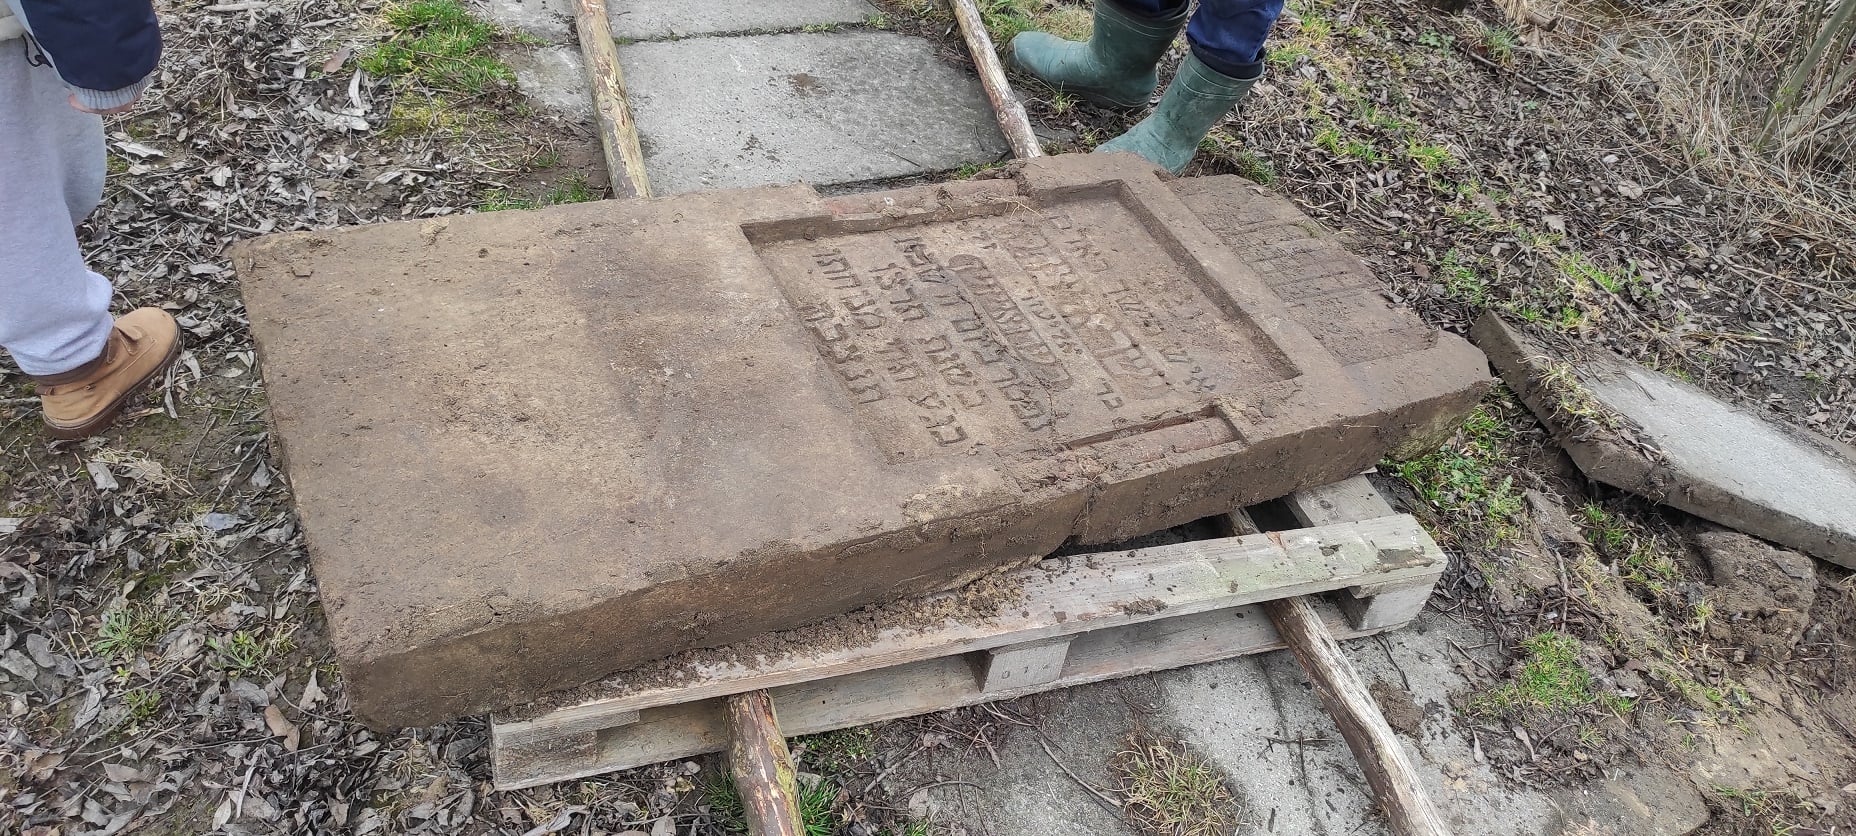 Macewy z żydowskiego cmentarza służyły jako płytki chodnikowe i narzędzie do ostrzenia narzędzi (zdjęcia)